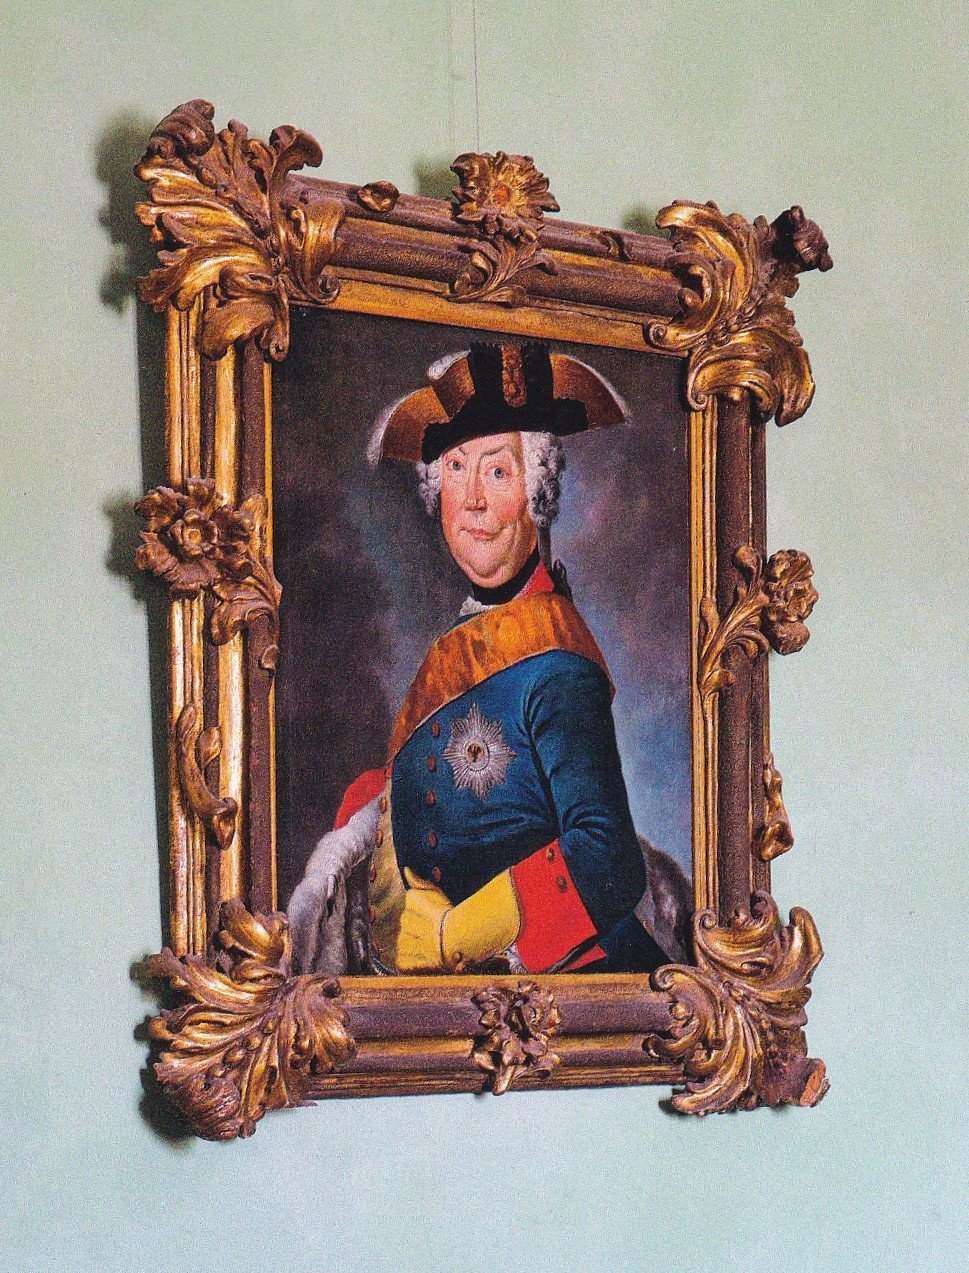 Fürst August Ludwig zu Anhalt-Köthen von Joachim Martin Falbe, nach 1742 (Schloß Wernigerode GmbH RR-F)